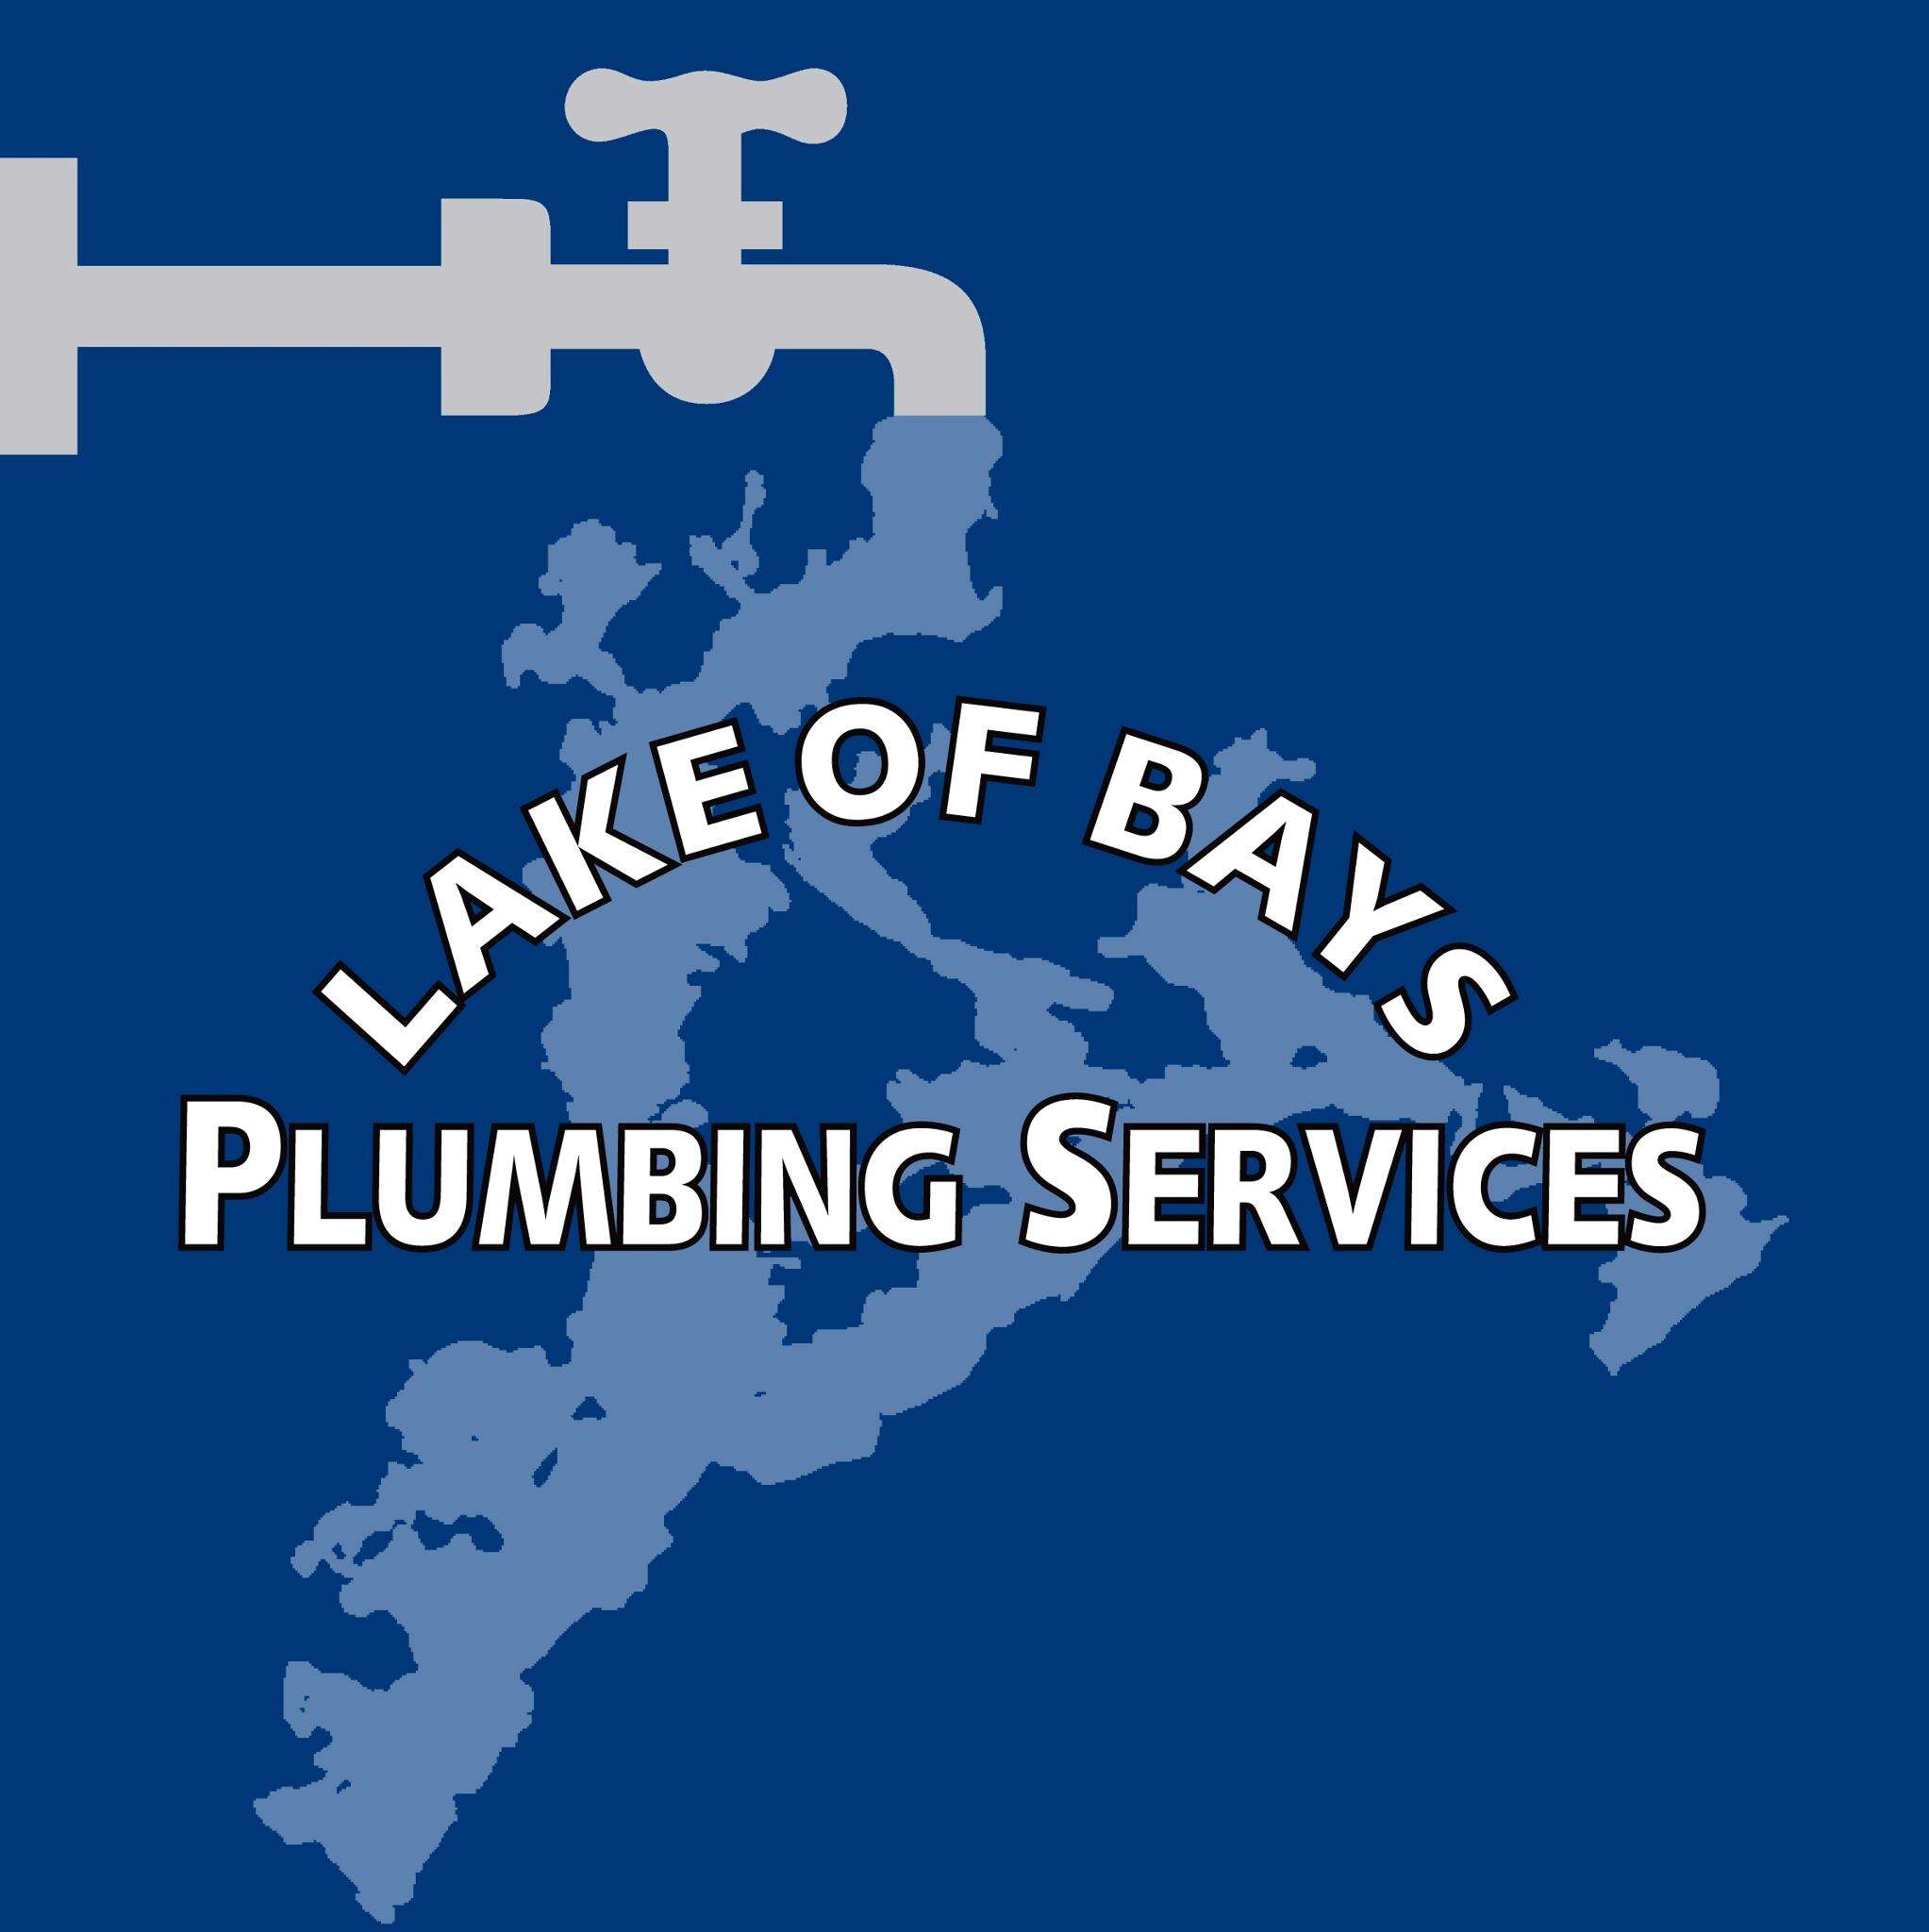 Lake of Bays Plumbing